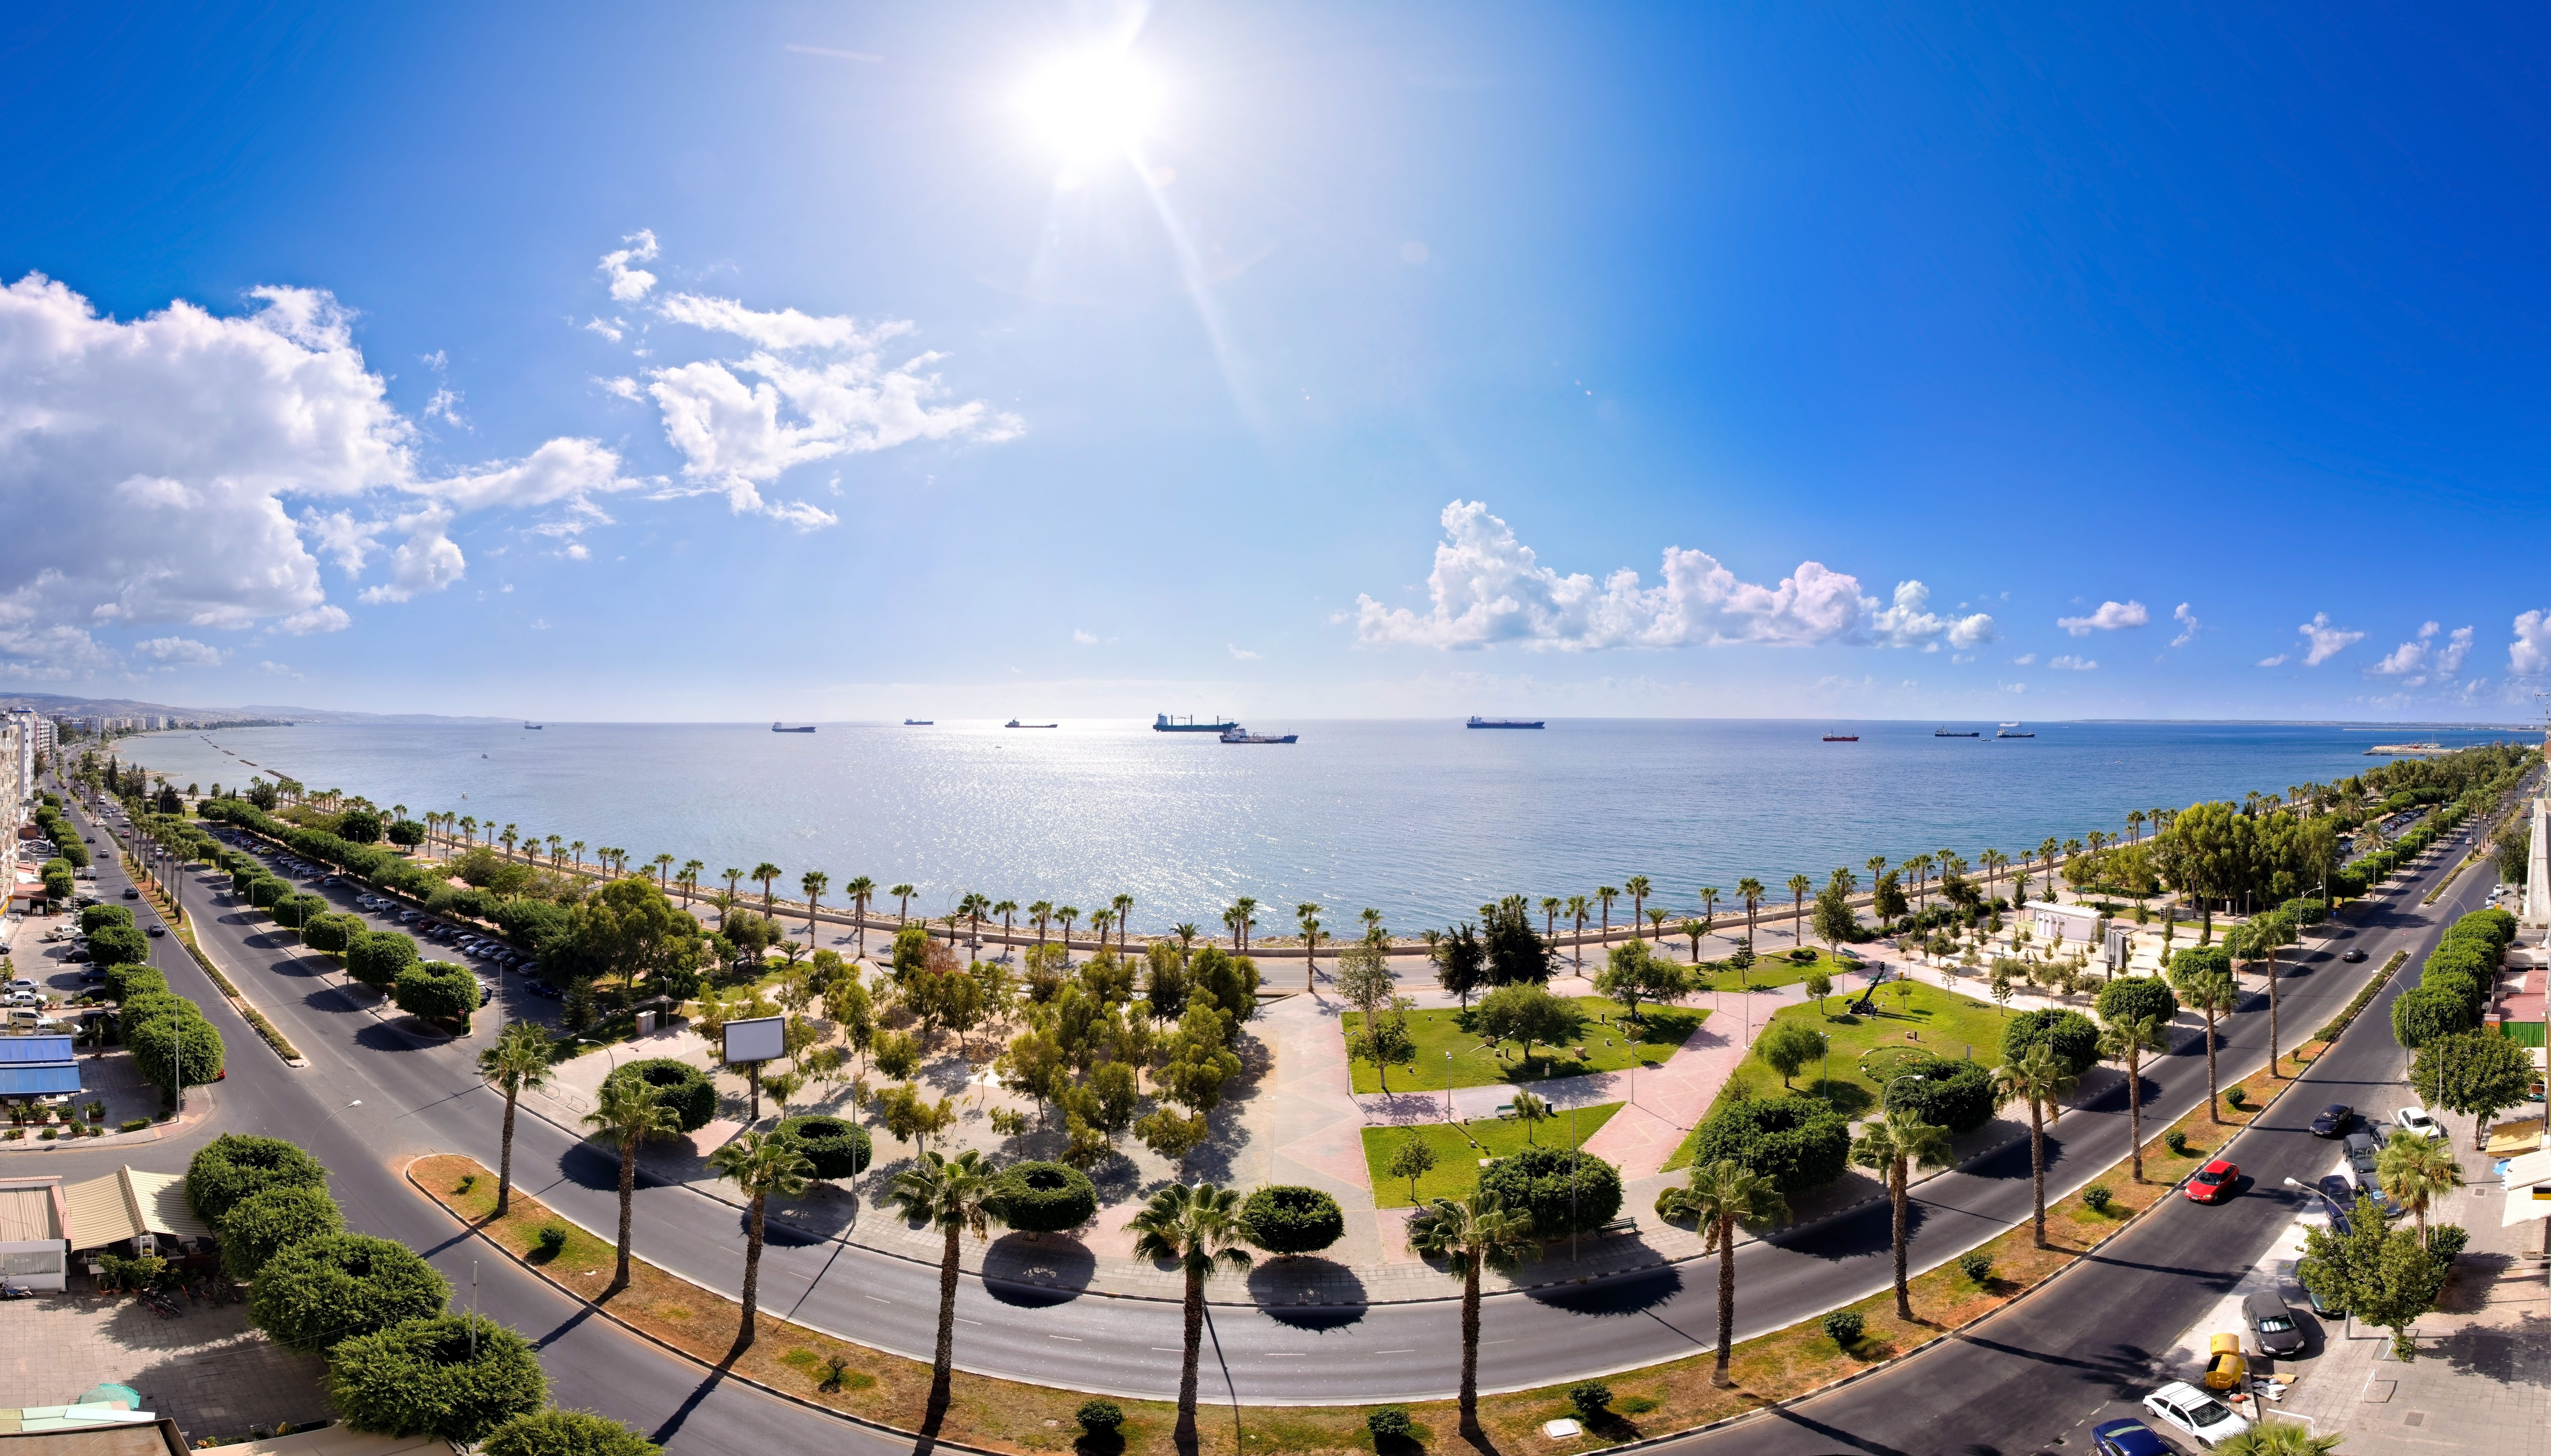 Жаркий средиземноморский климат делает Кипр идеальным местом для отдыха летом